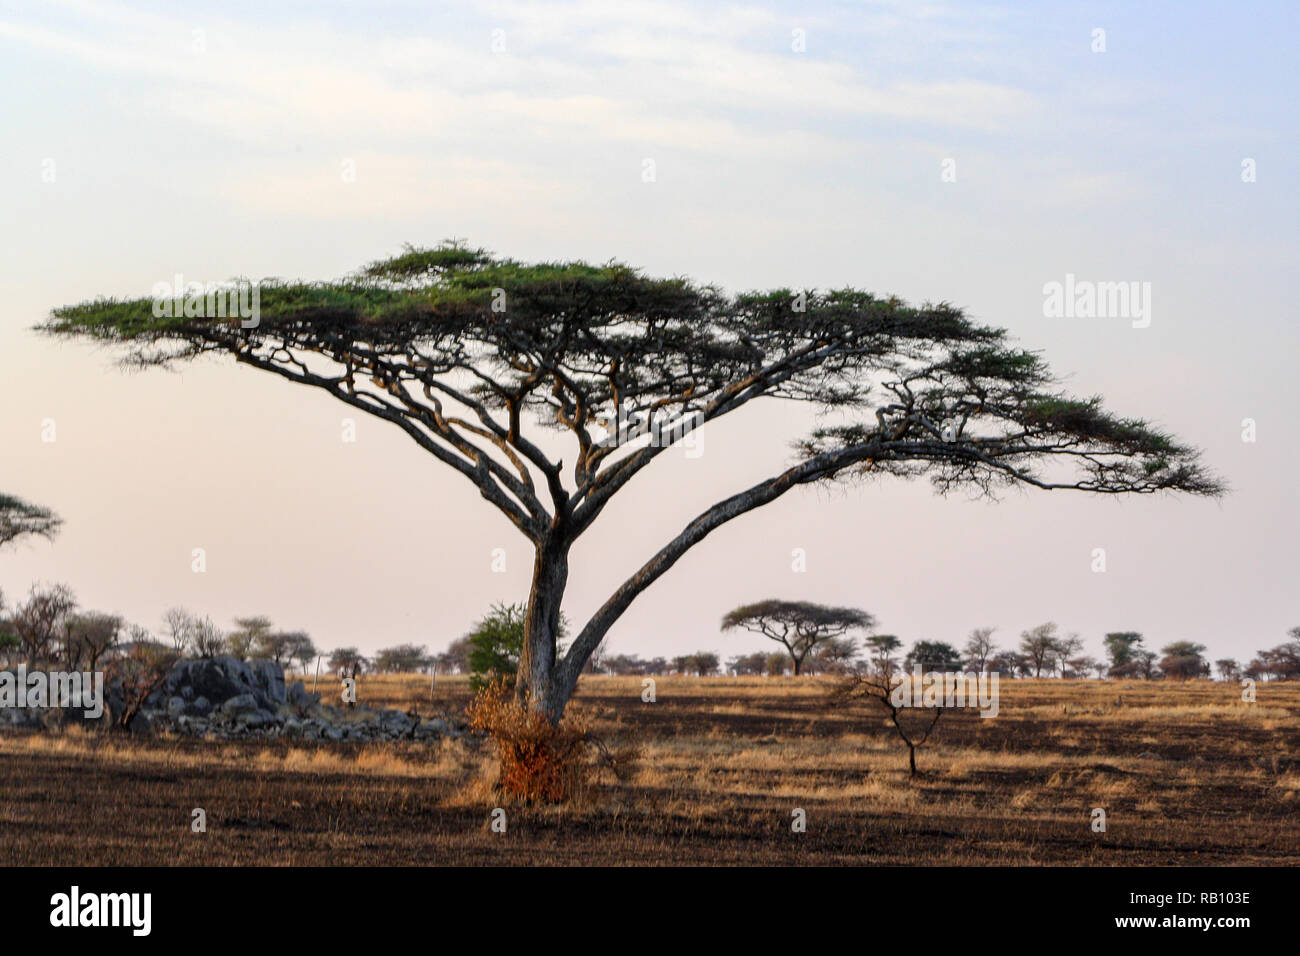 Acacia Tree in the Serengeti, Tanzania Stock Photo